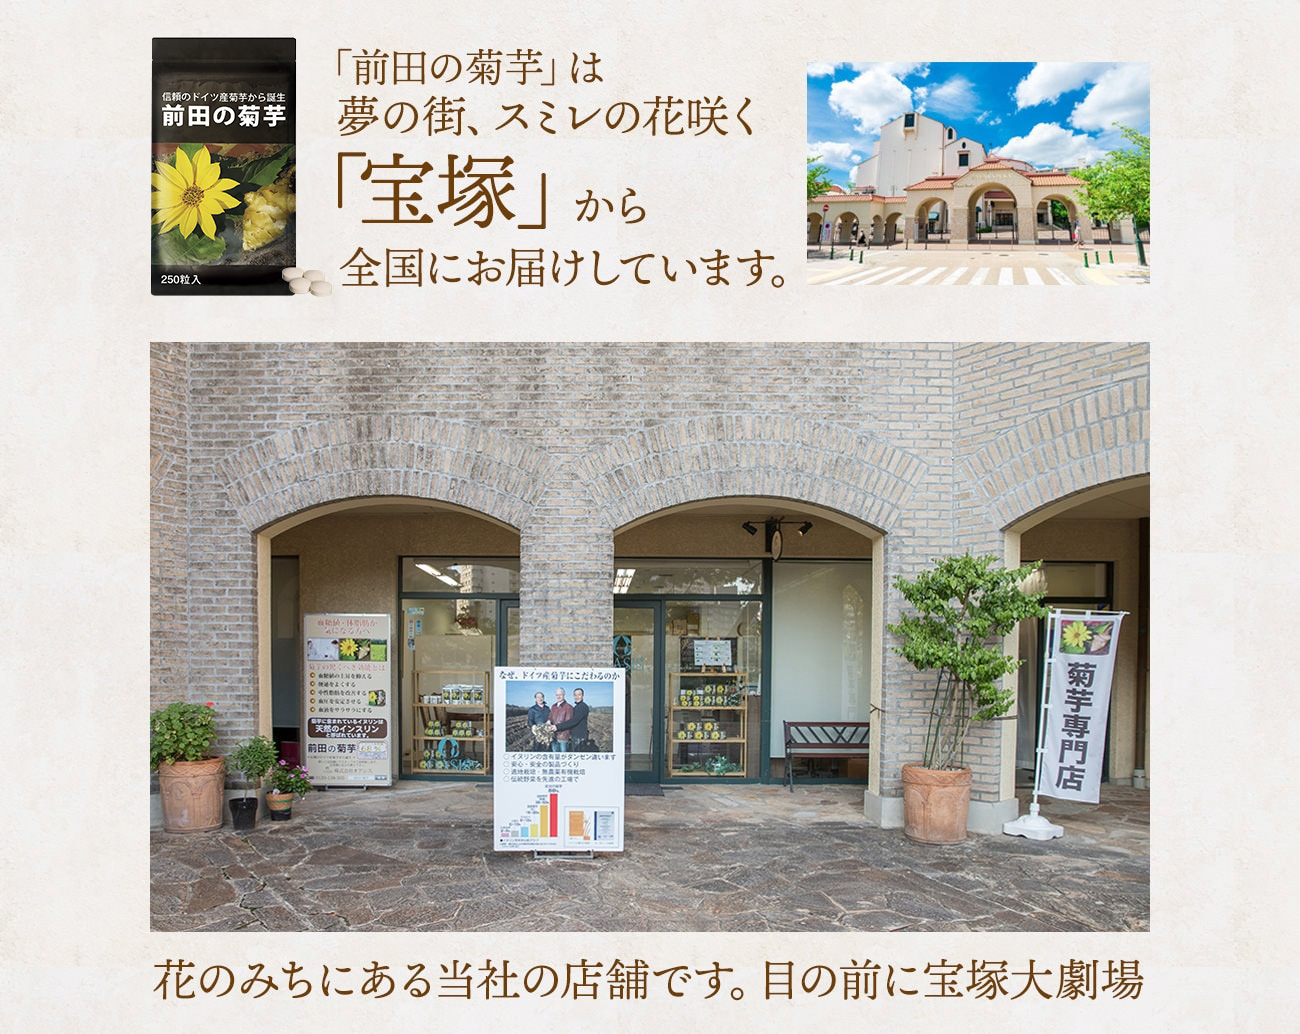 「前田の菊芋」は夢の街、スミレの花咲く「宝塚」から全国にお届けしています。